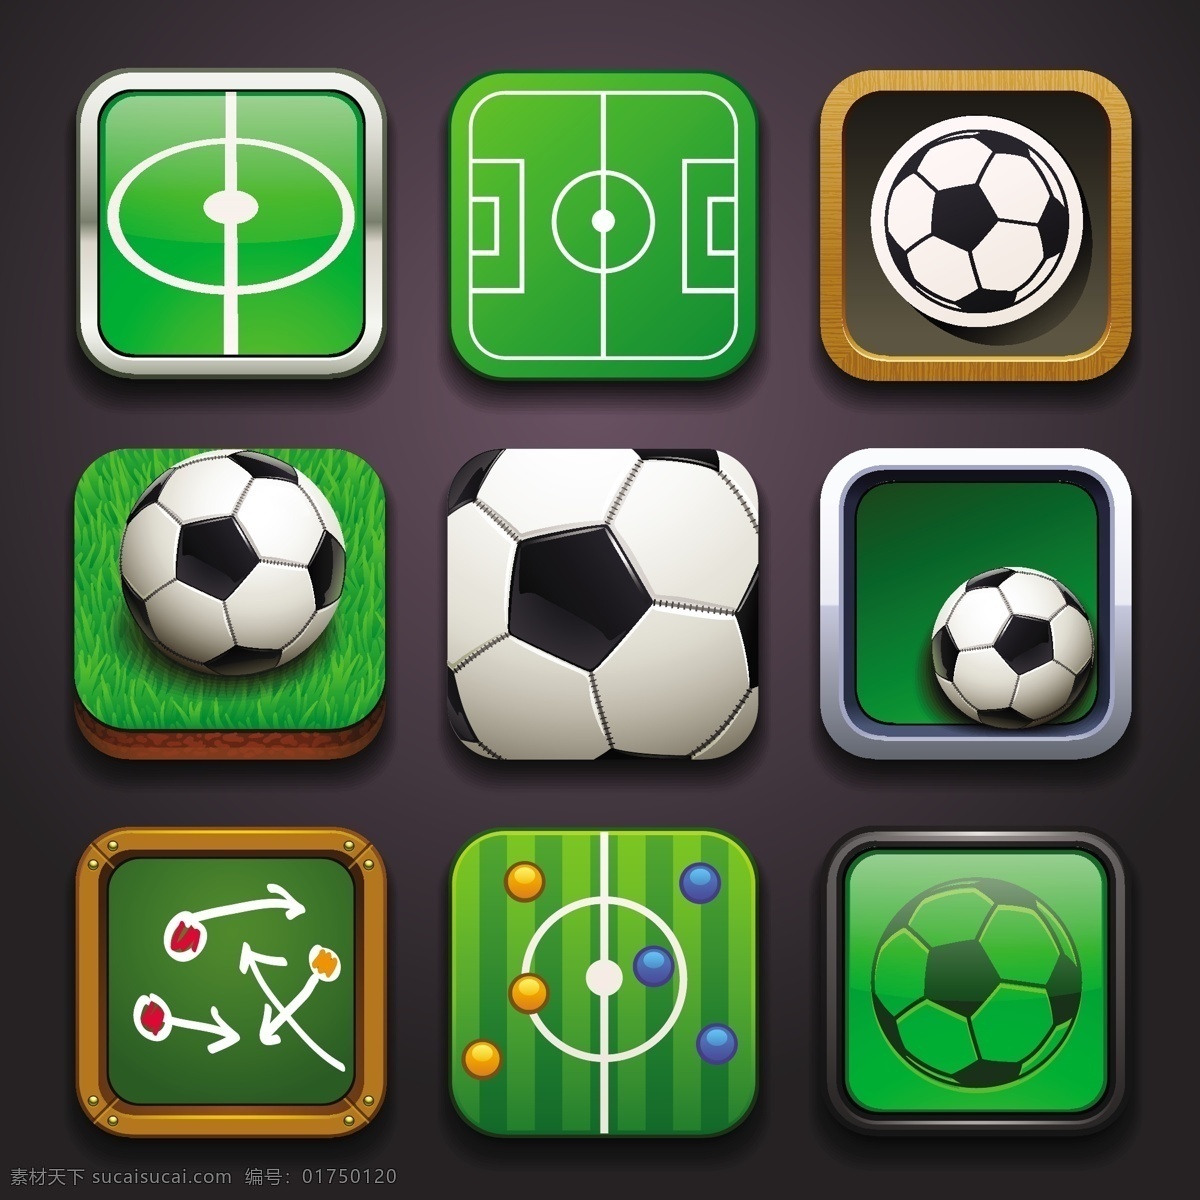 绿色足球图标 绿色 足球 图标 模板下载 球场 黑板 体育运动 生活百科 矢量素材 黑色